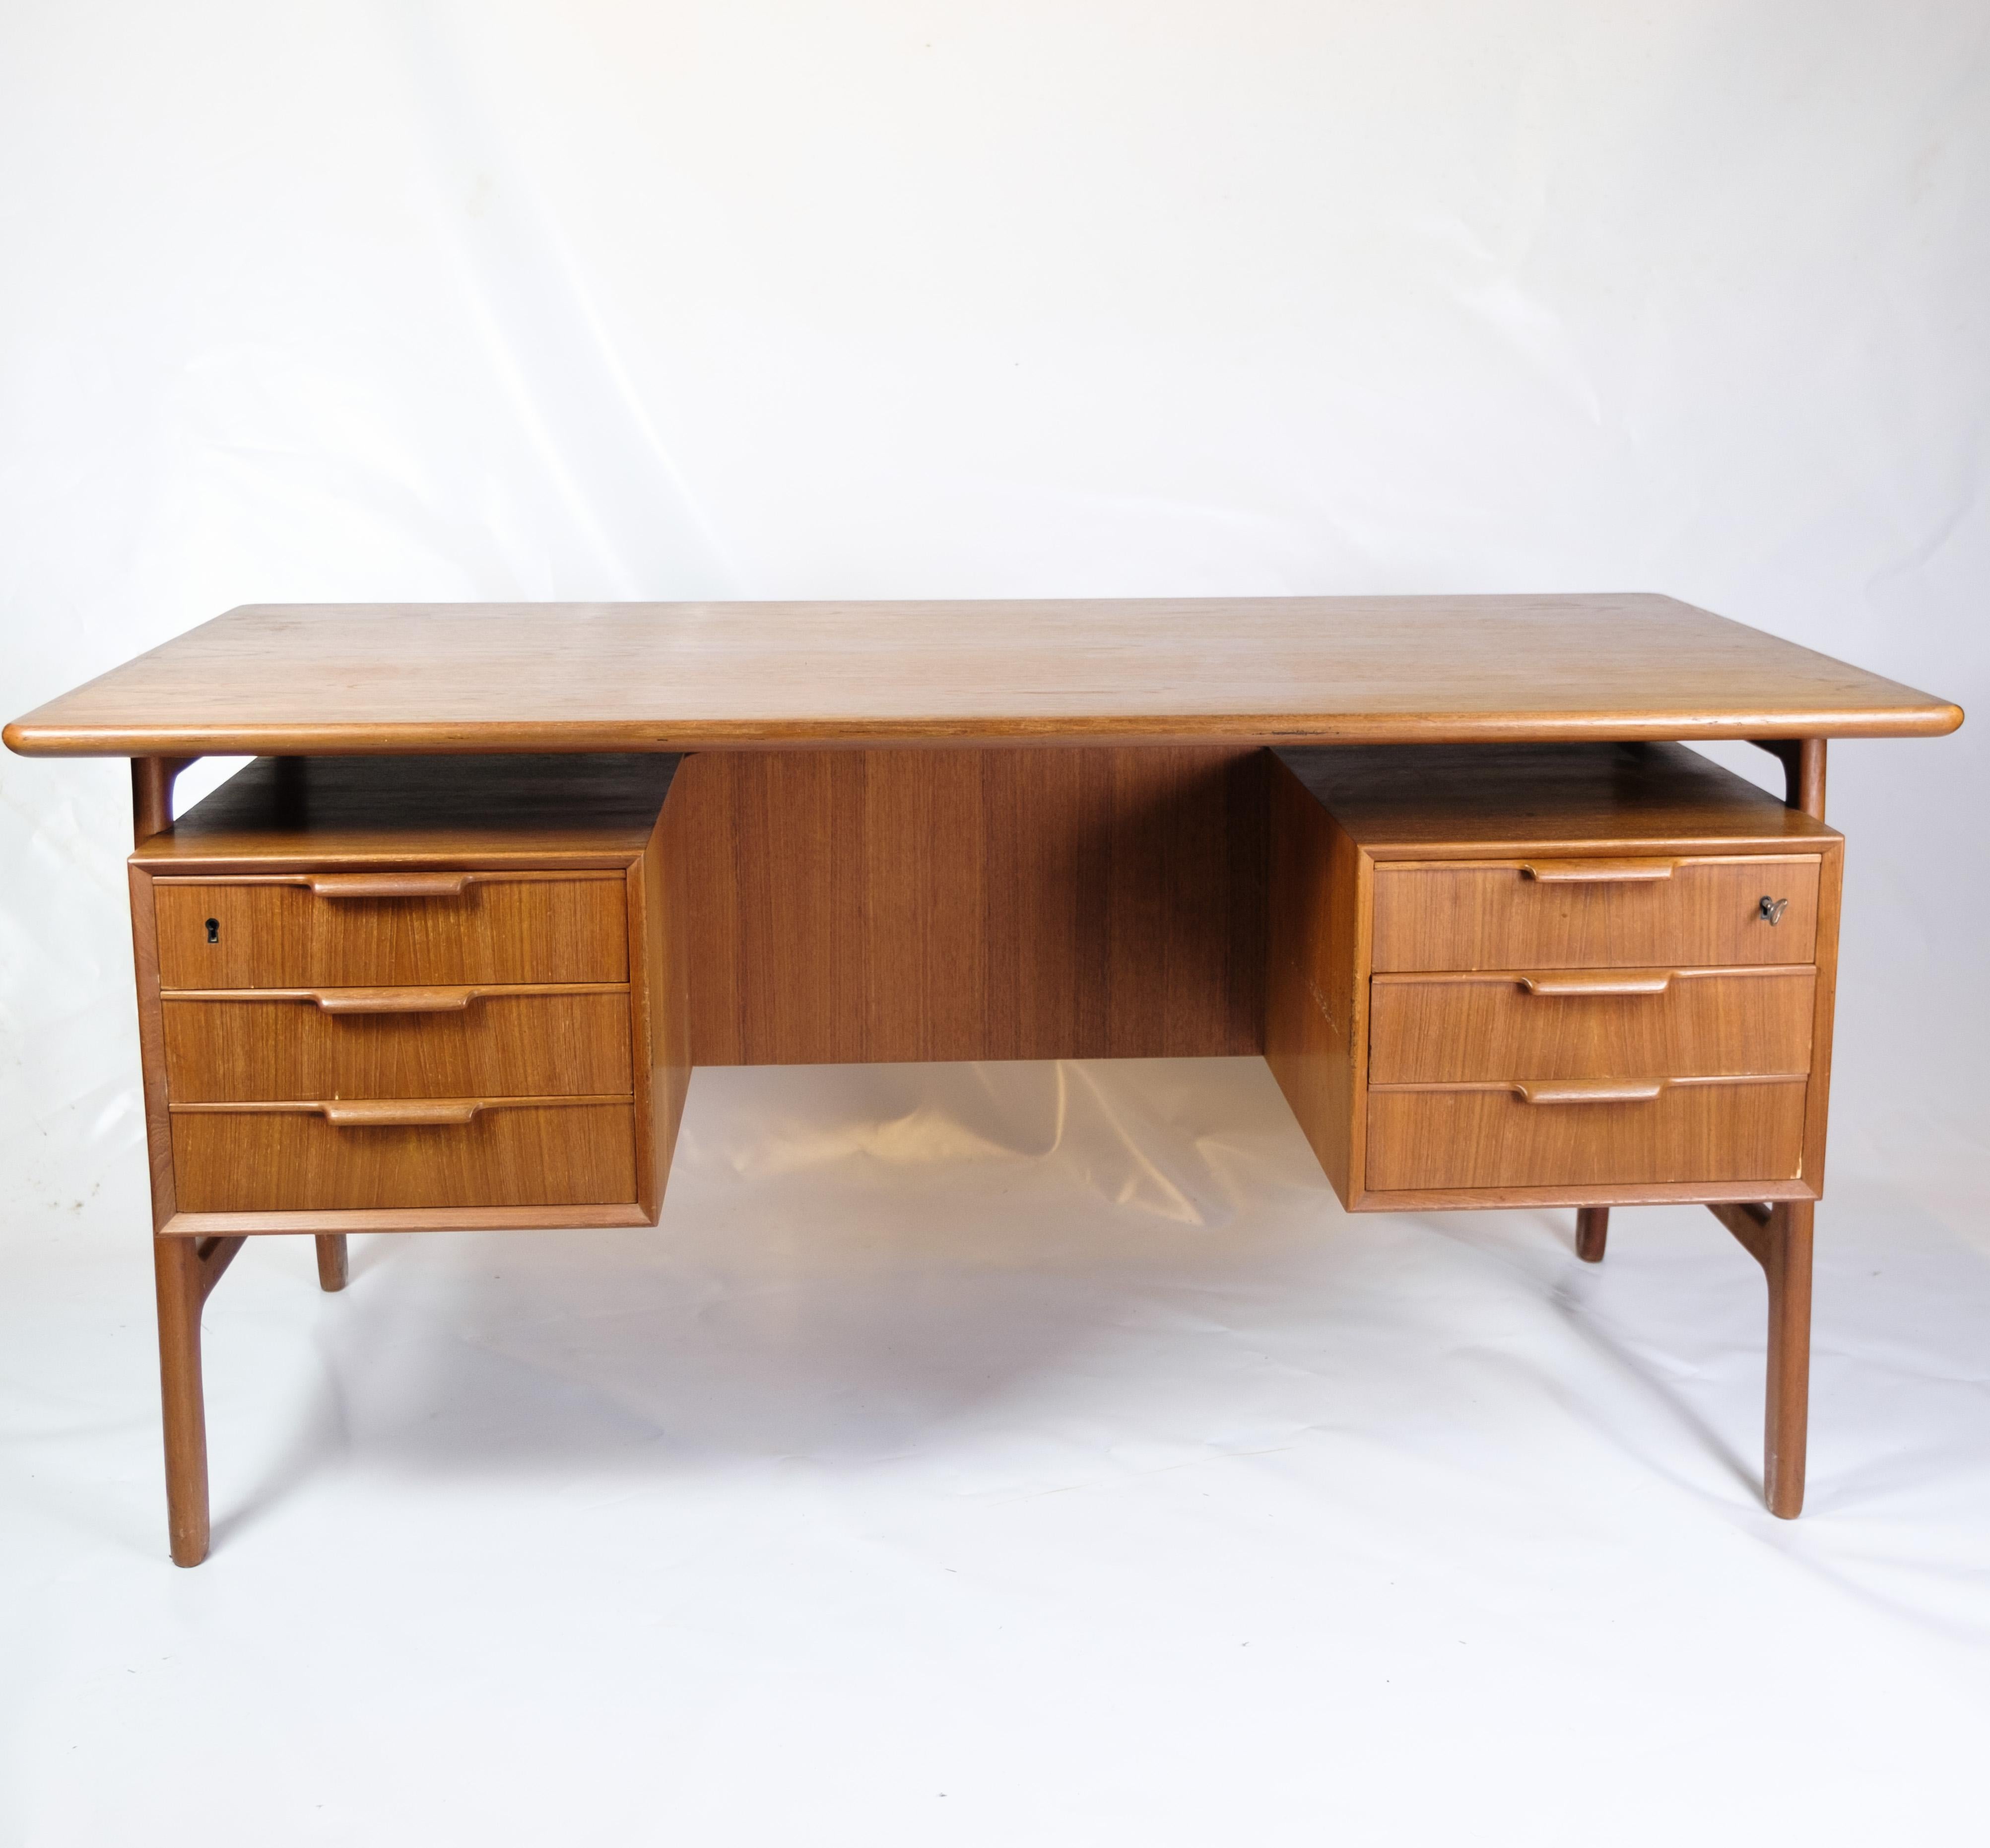 Ce bureau, connu sous le nom de modèle 75, est une excellente représentation de l'artisanat danois des années 1960. Fabriqué par Omann Junior Møbelfabrik, une entreprise réputée pour sa qualité et son sens de l'innovation, ce bureau est un exemple